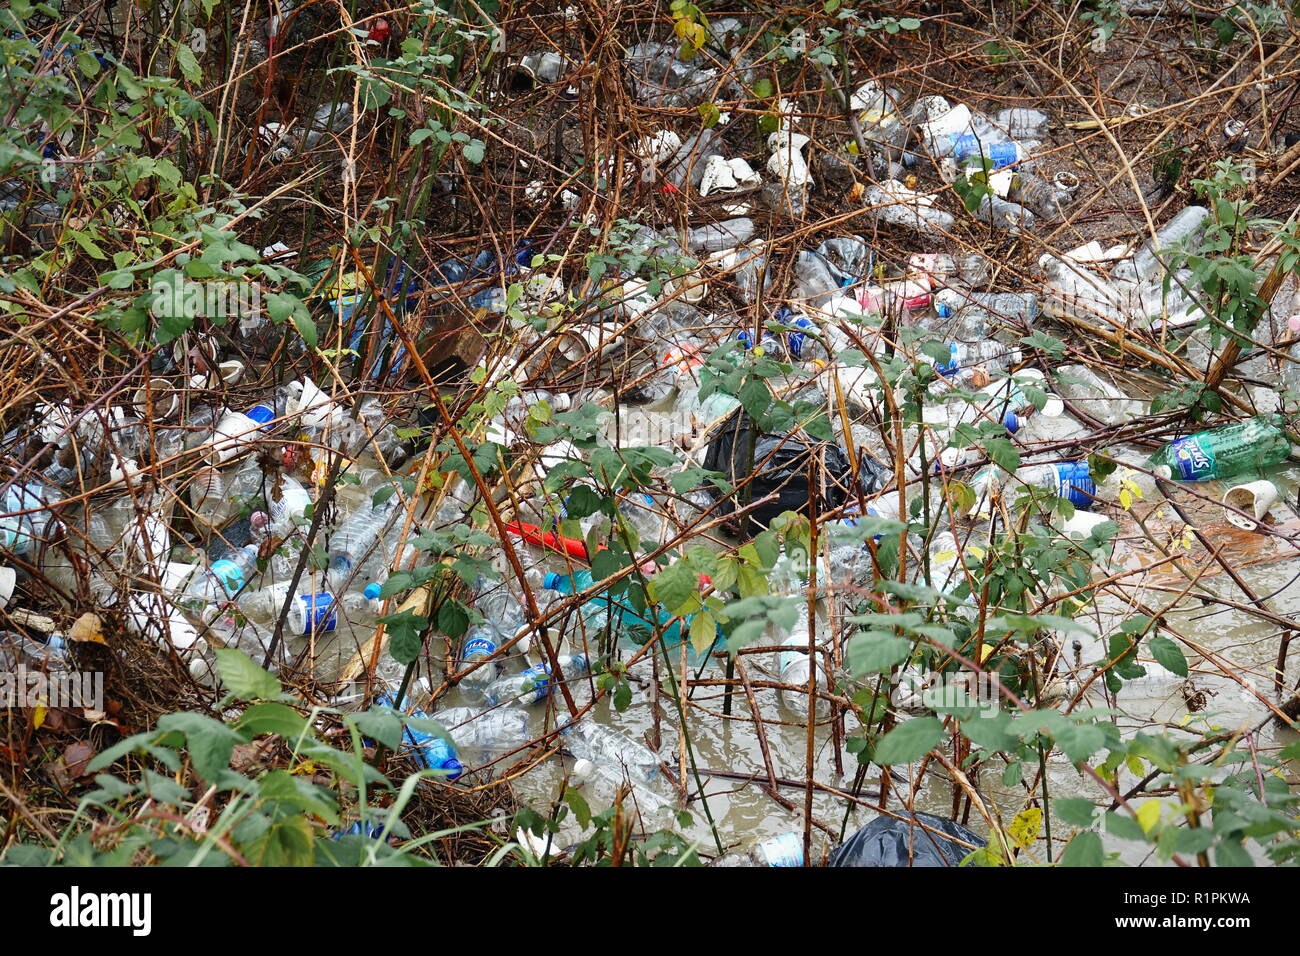 Mailand, Italien - November 2017: Umweltverschmutzung von nicht biologisch abbaubaren Abfällen in einer Stadt Park verlassen Stockfoto